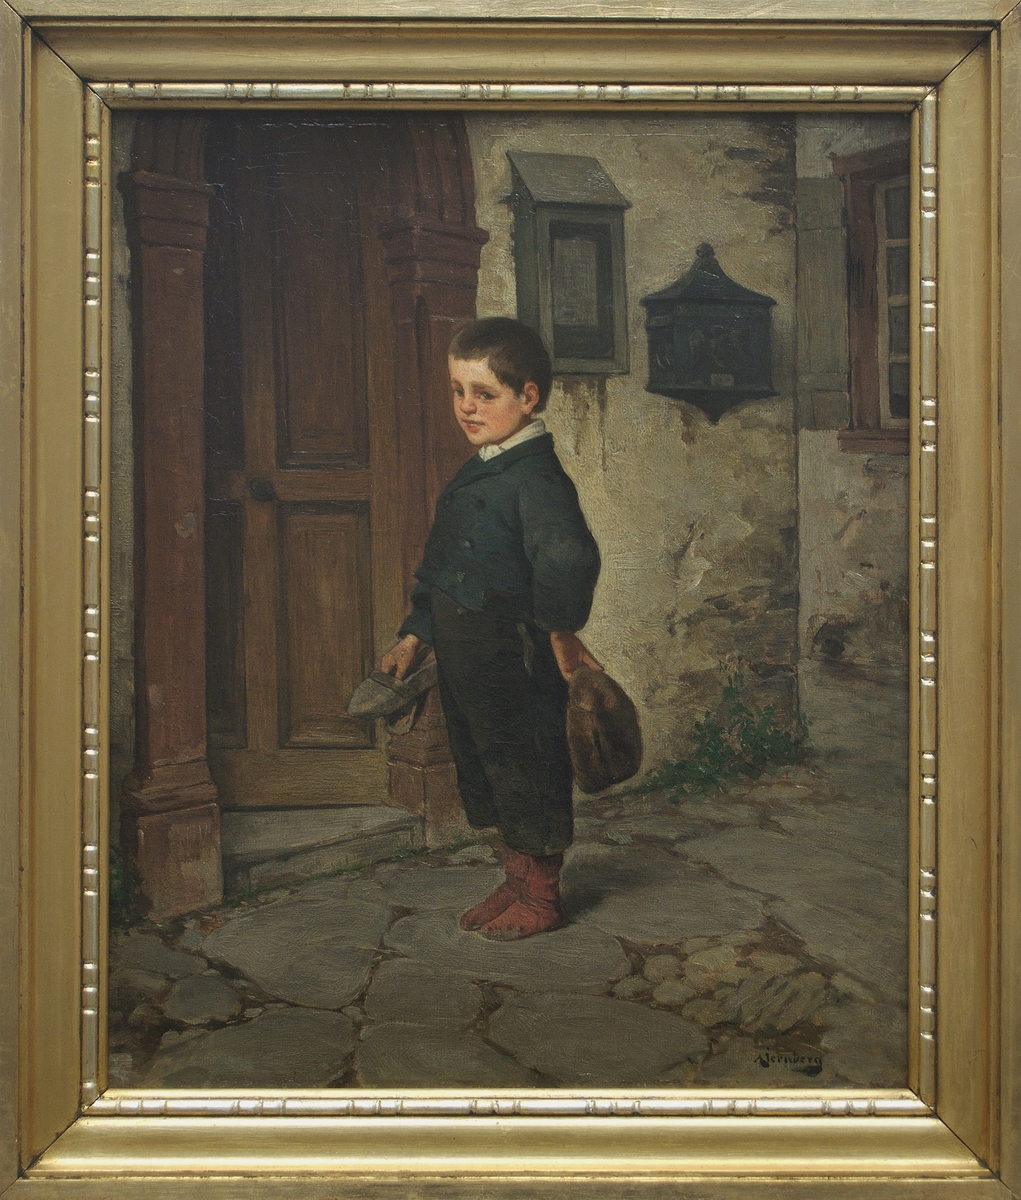 Målning föreställande ung, blygt leende pojke, centralt stående i helfigur framför husingång. I ena handen en brun mössa. Förgylld bred ram med brutet stavmönster närmast bilden. Olja på fabrikstillverkad grunderingsväv.